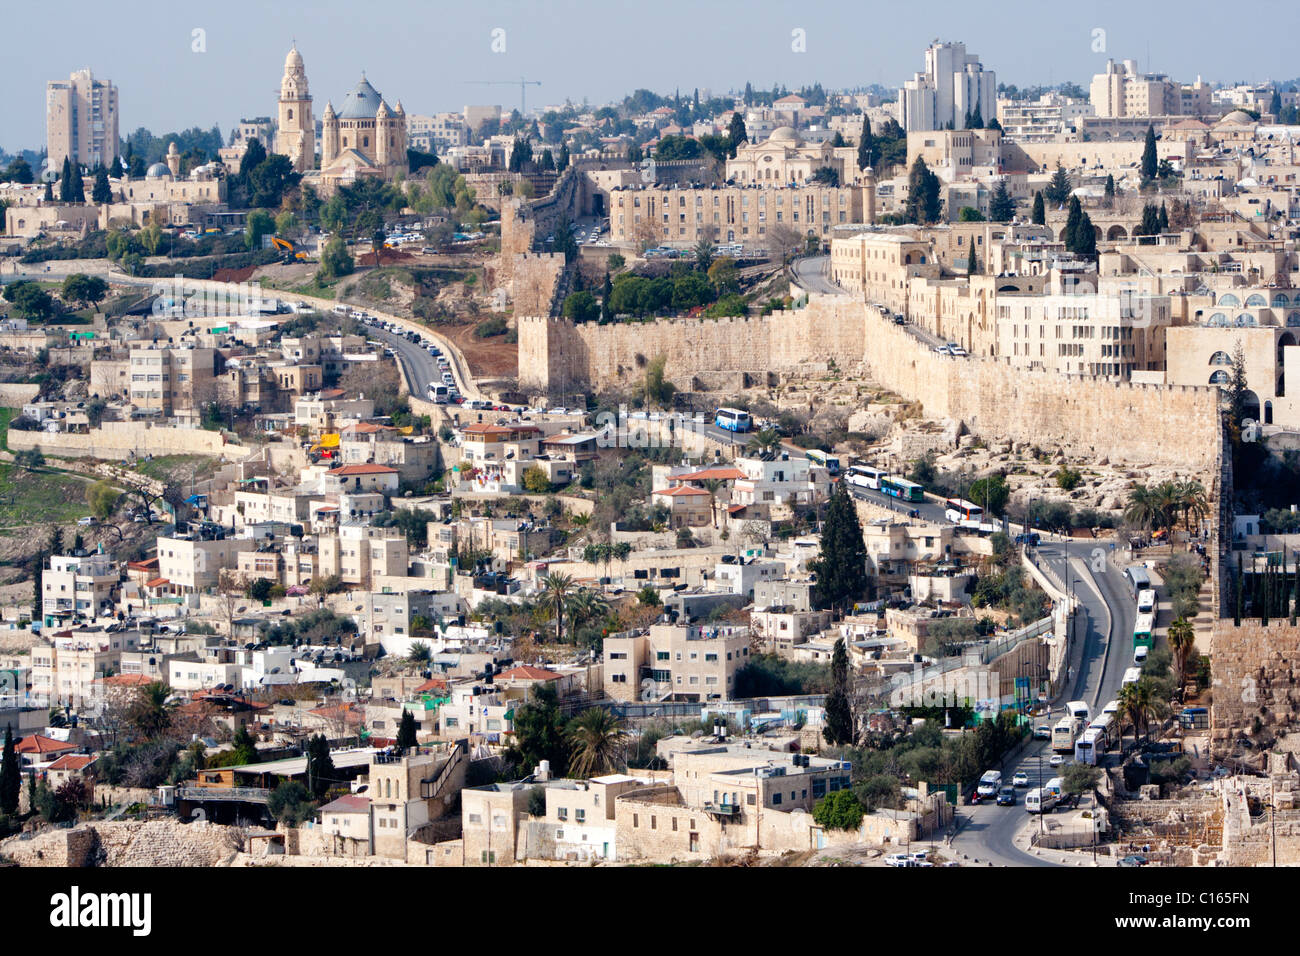 Vue sur les remparts de la vieille ville de Jérusalem. Israël Banque D'Images